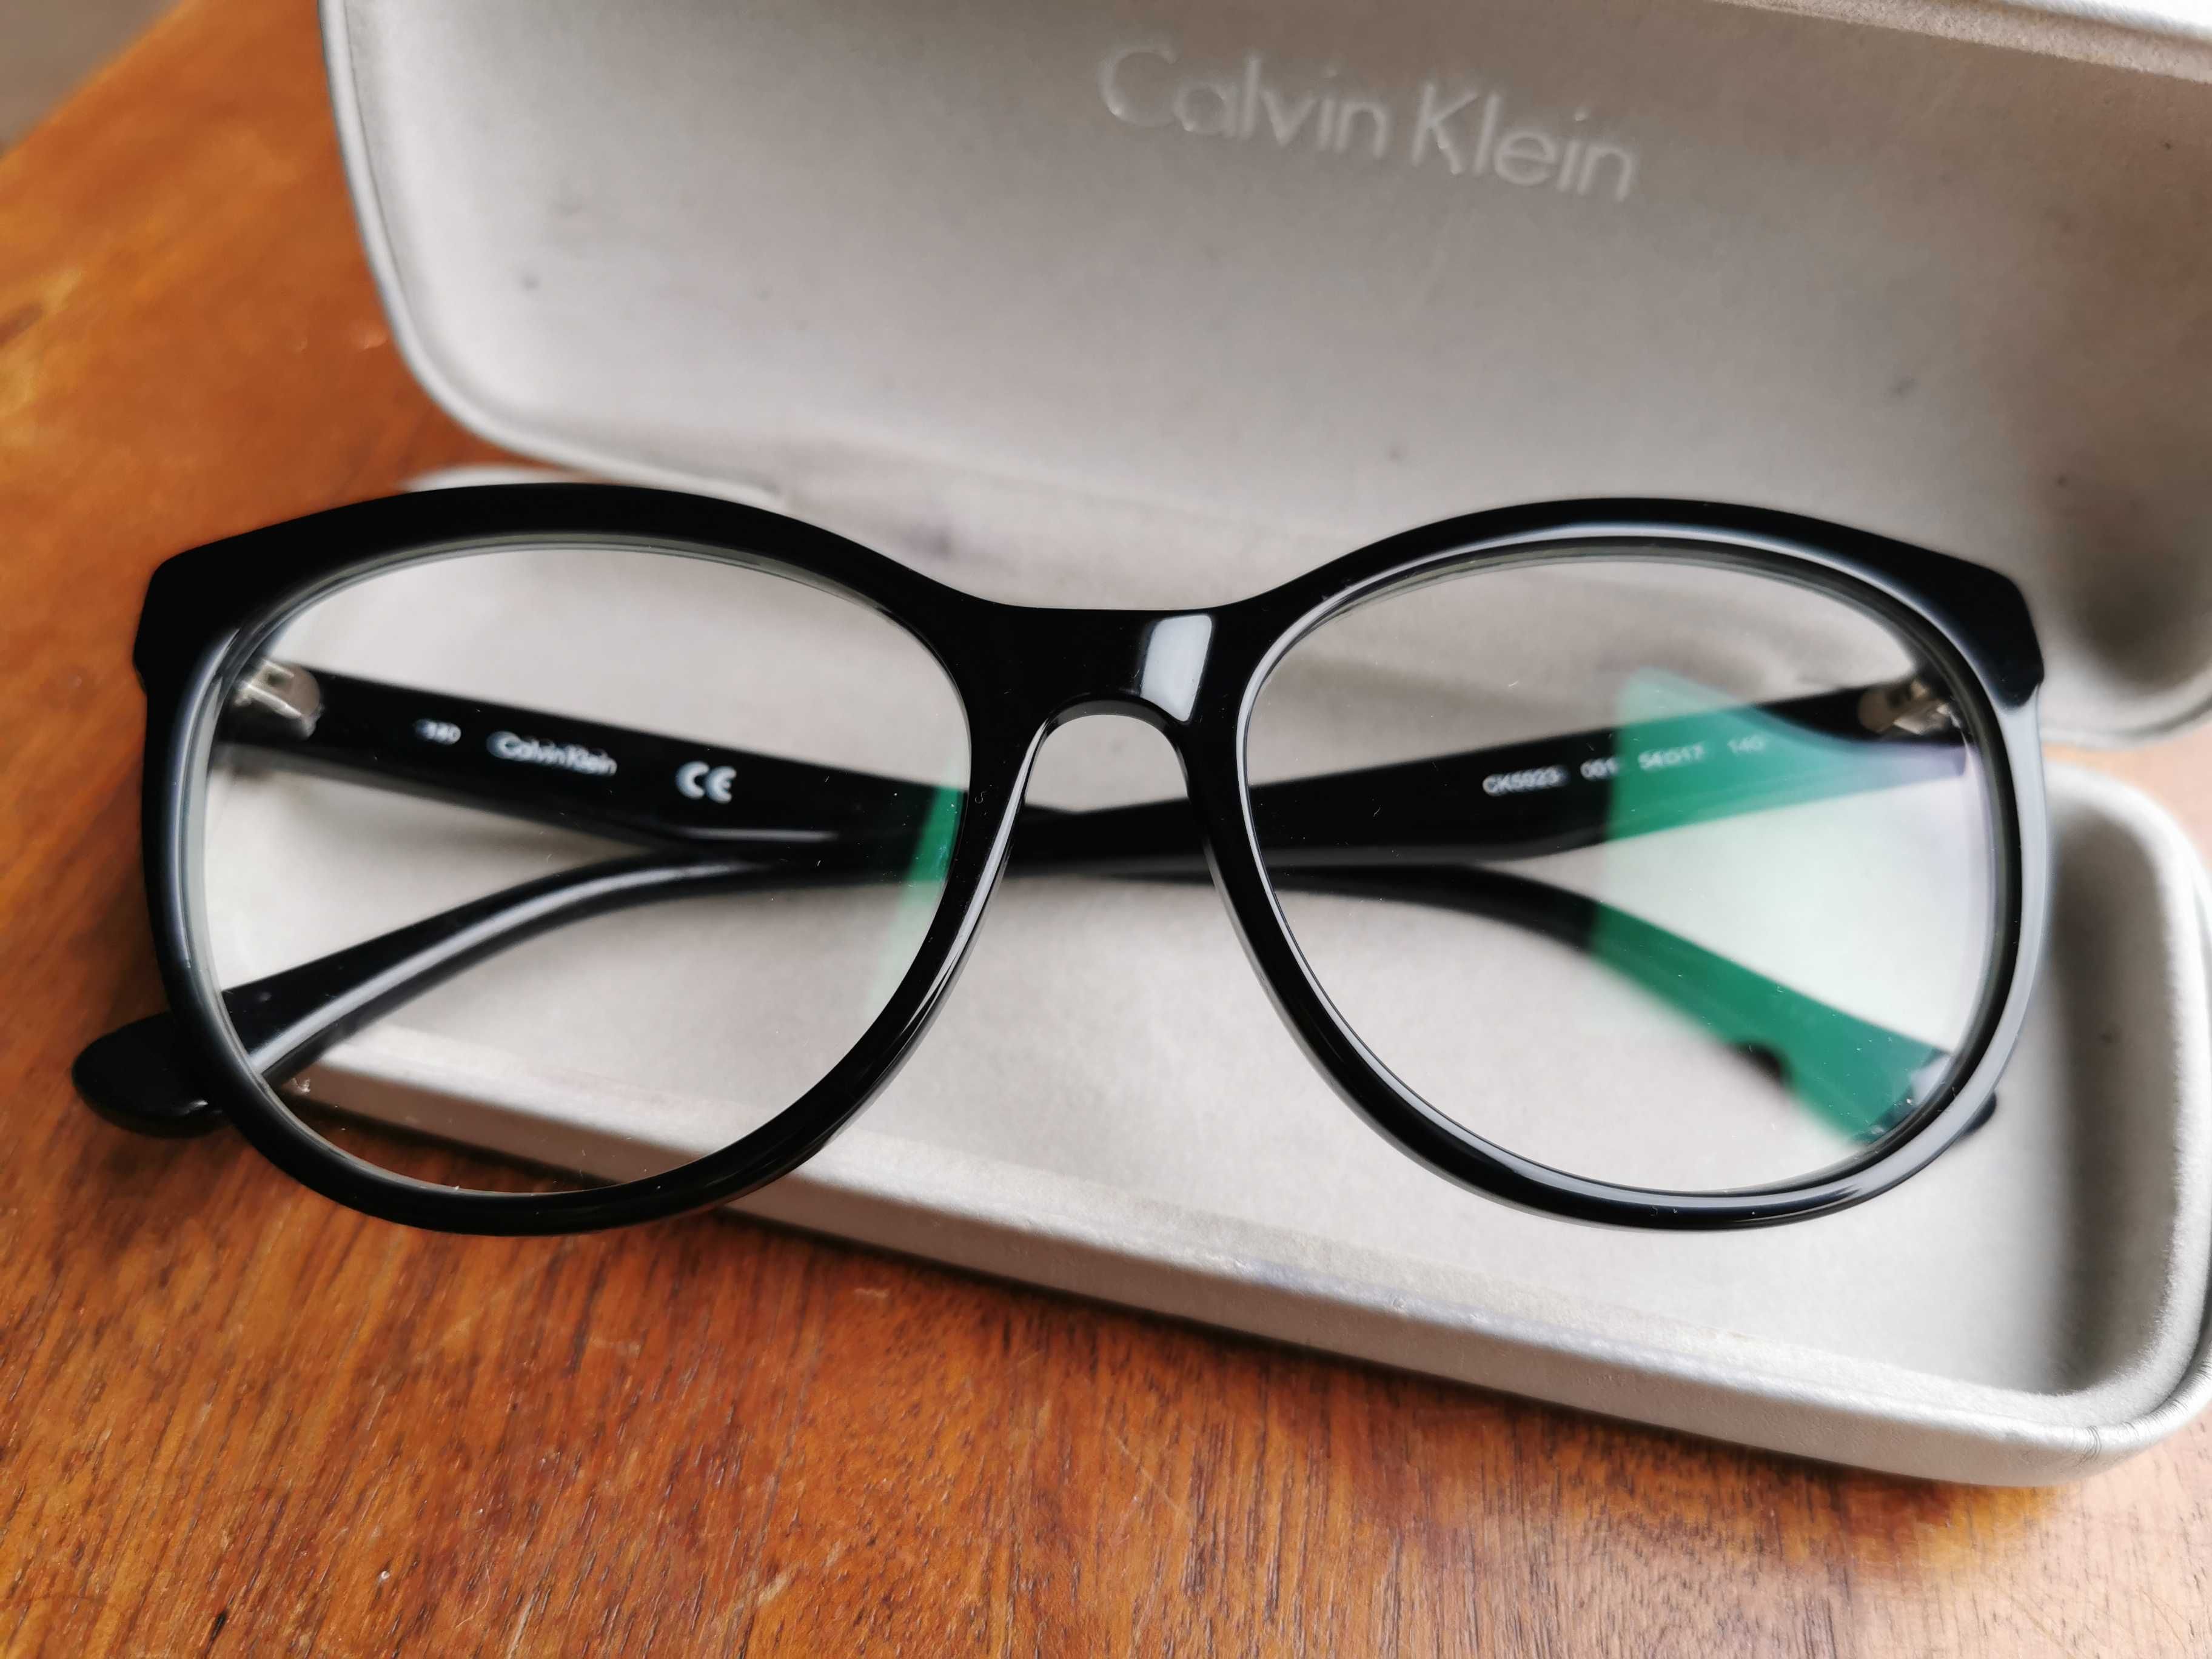 Oprawki do okularów Calvin Klein - okulary zerówki. Idealne!